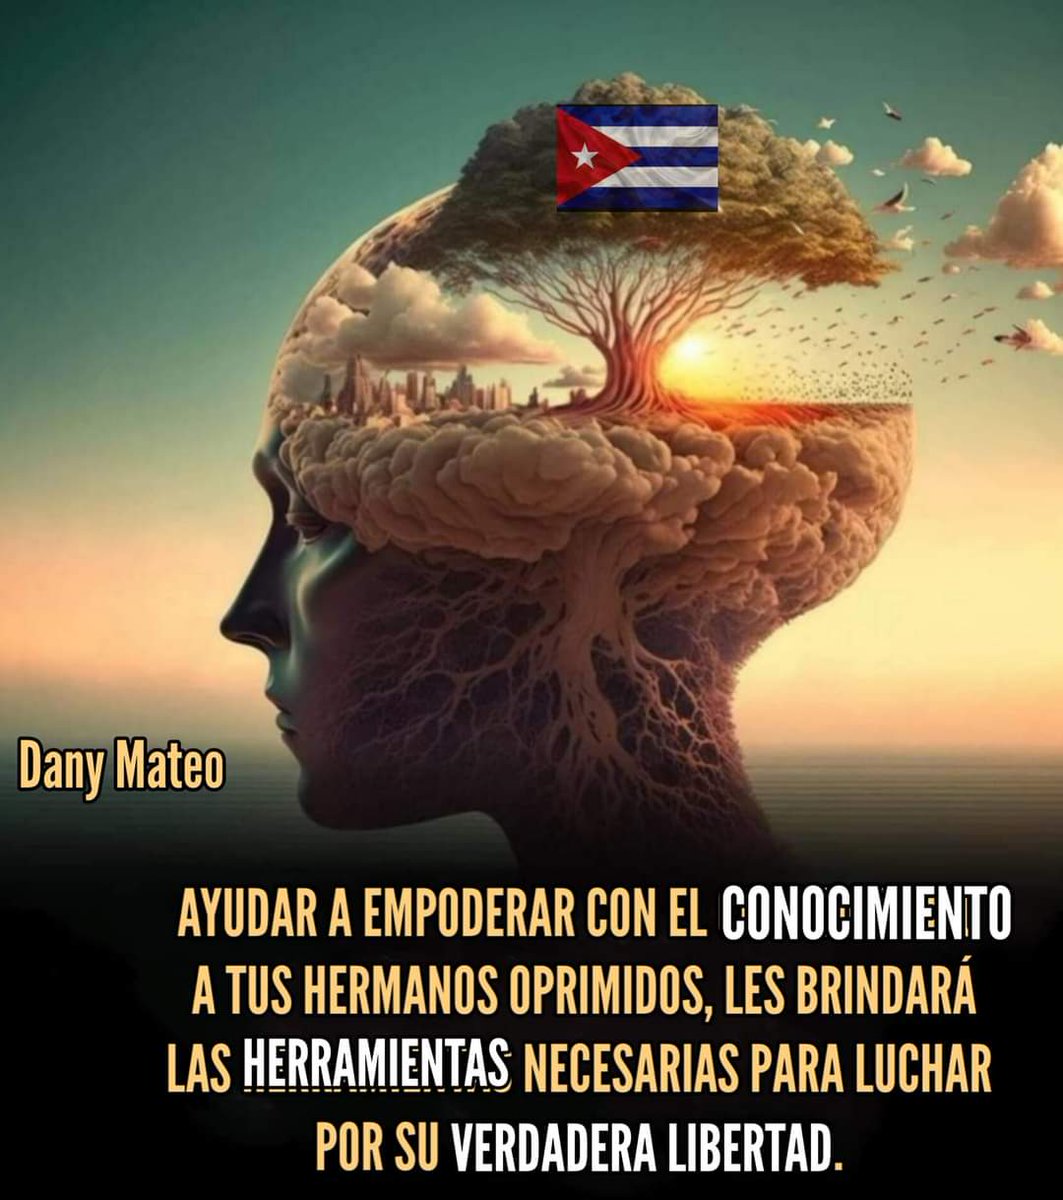 #MejorSinComunismo
#PintaTuPedacito
#TulaEsMiPastor
#LimpiemosElPantano
#CubanosNoSomos12
#CubaLevántate
#CubaPaLaCalle